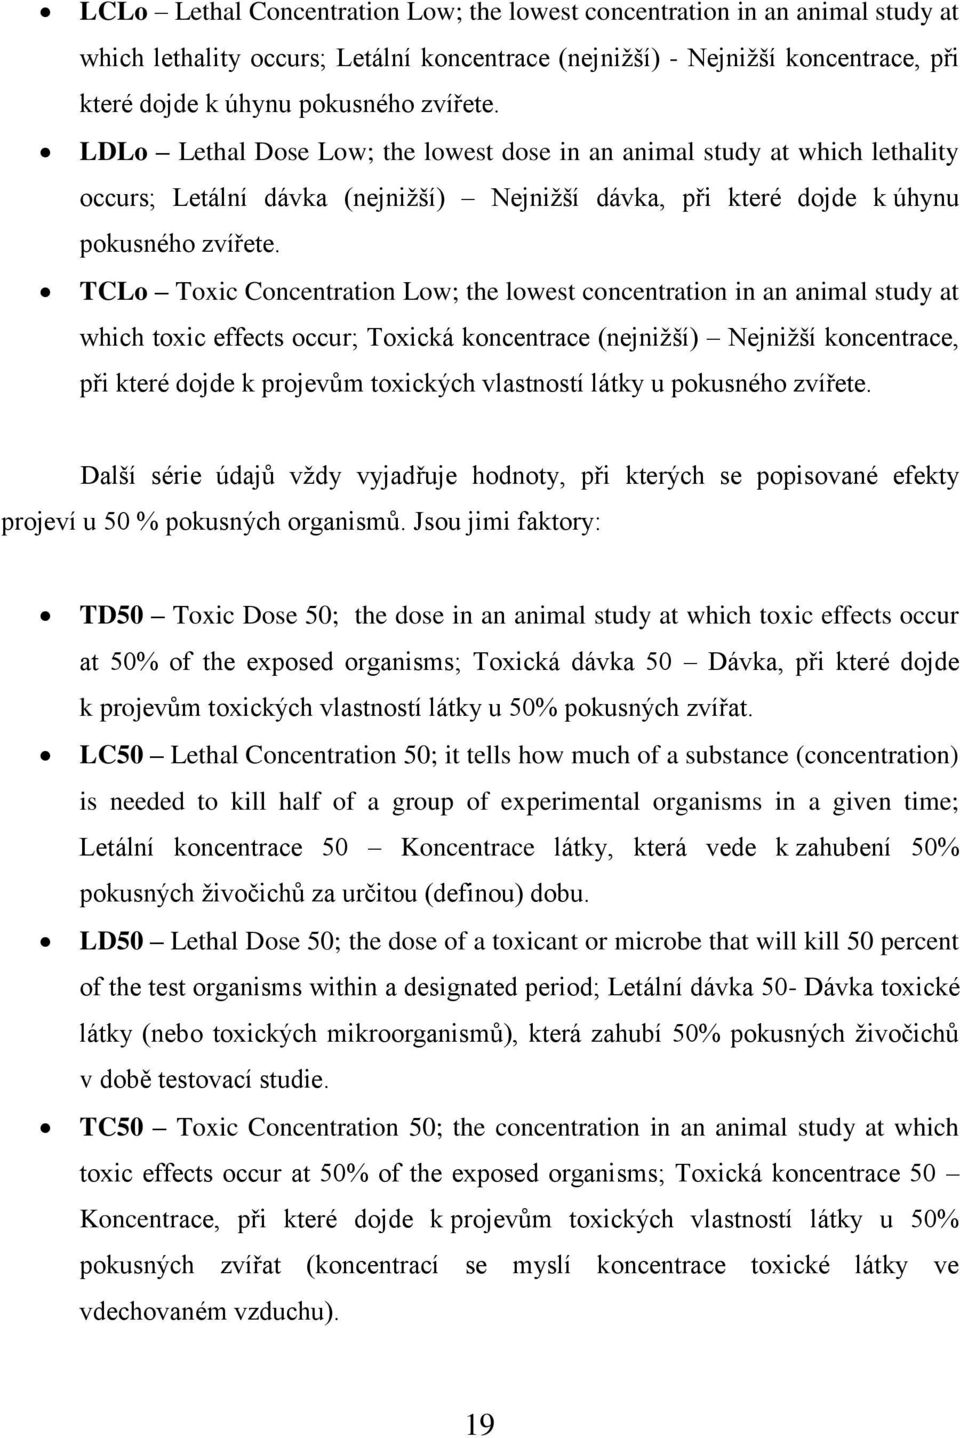 TCLo Toxic Concentration Low; the lowest concentration in an animal study at which toxic effects occur; Toxická koncentrace (nejnižší) Nejnižší koncentrace, při které dojde k projevům toxických